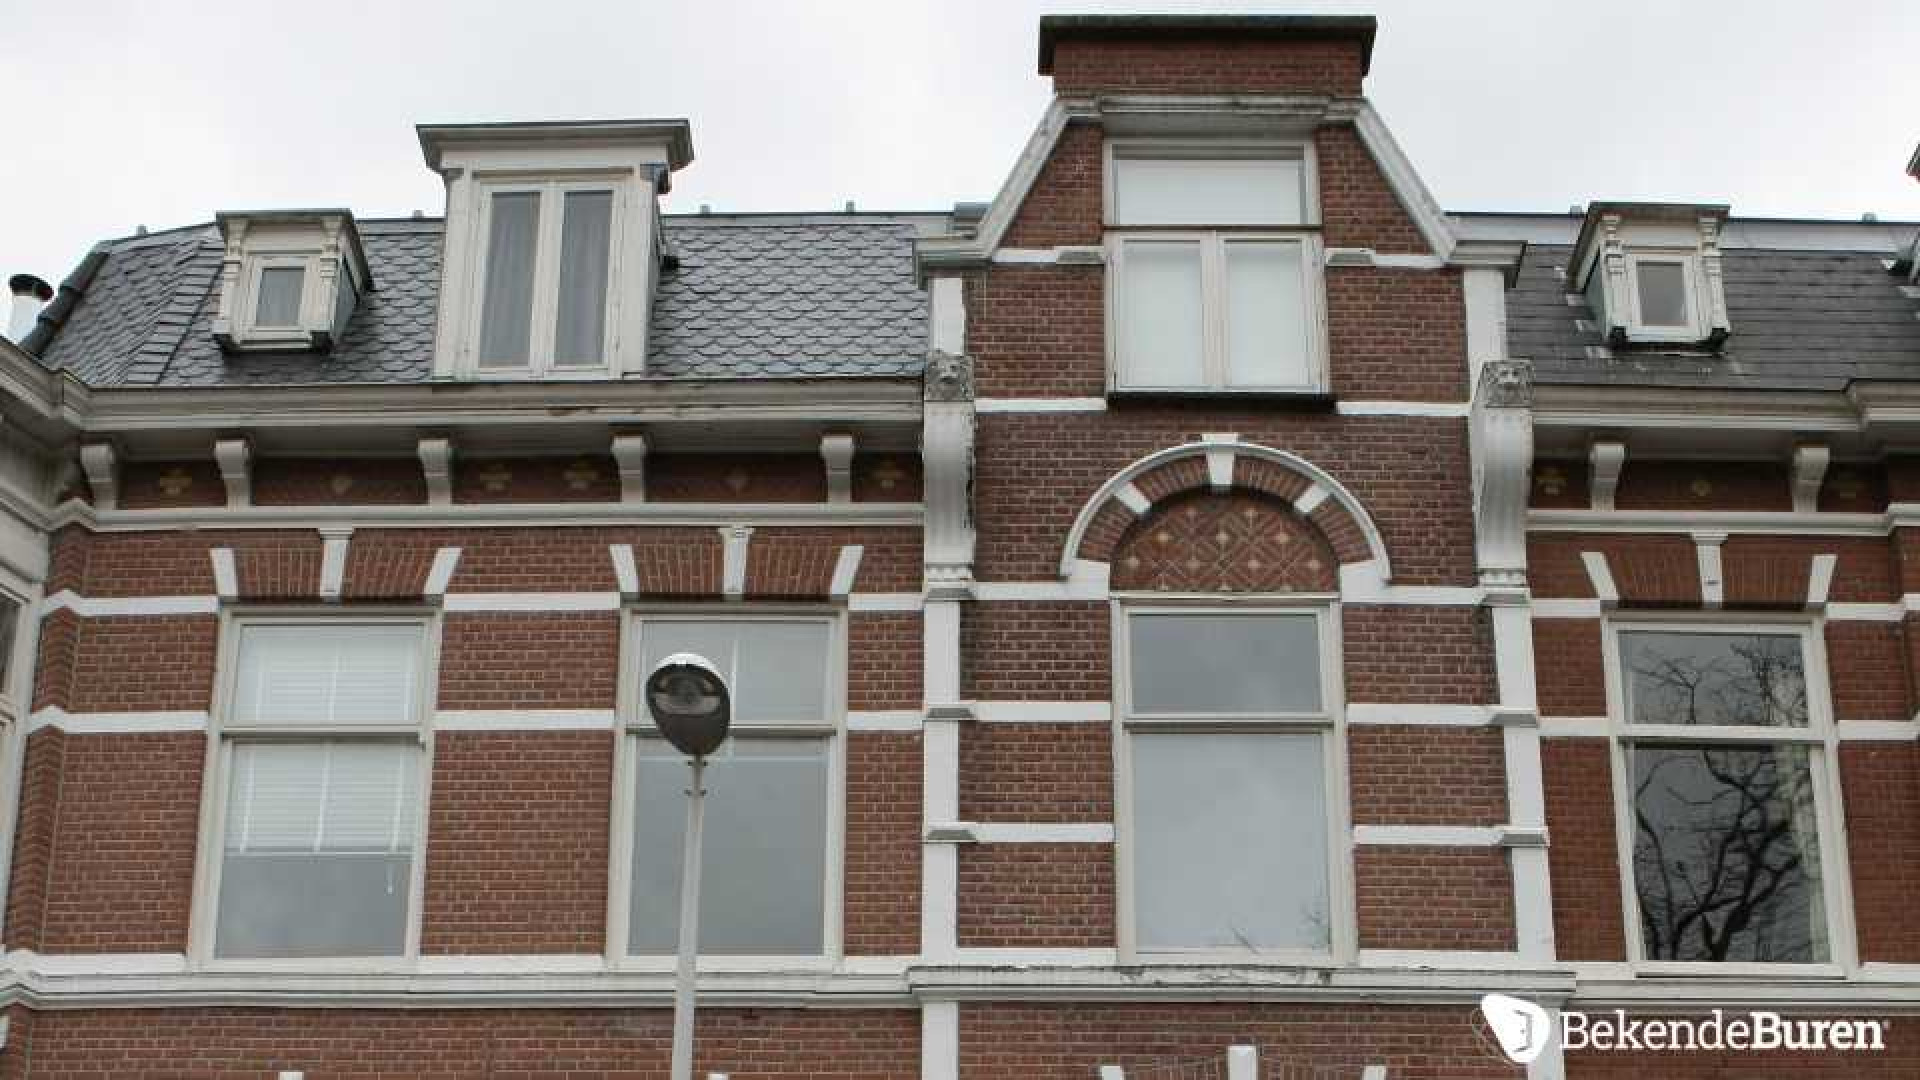 Dennis Storm verkoopt zijn Haagse dubbele bovenhuis. Zie foto's 3